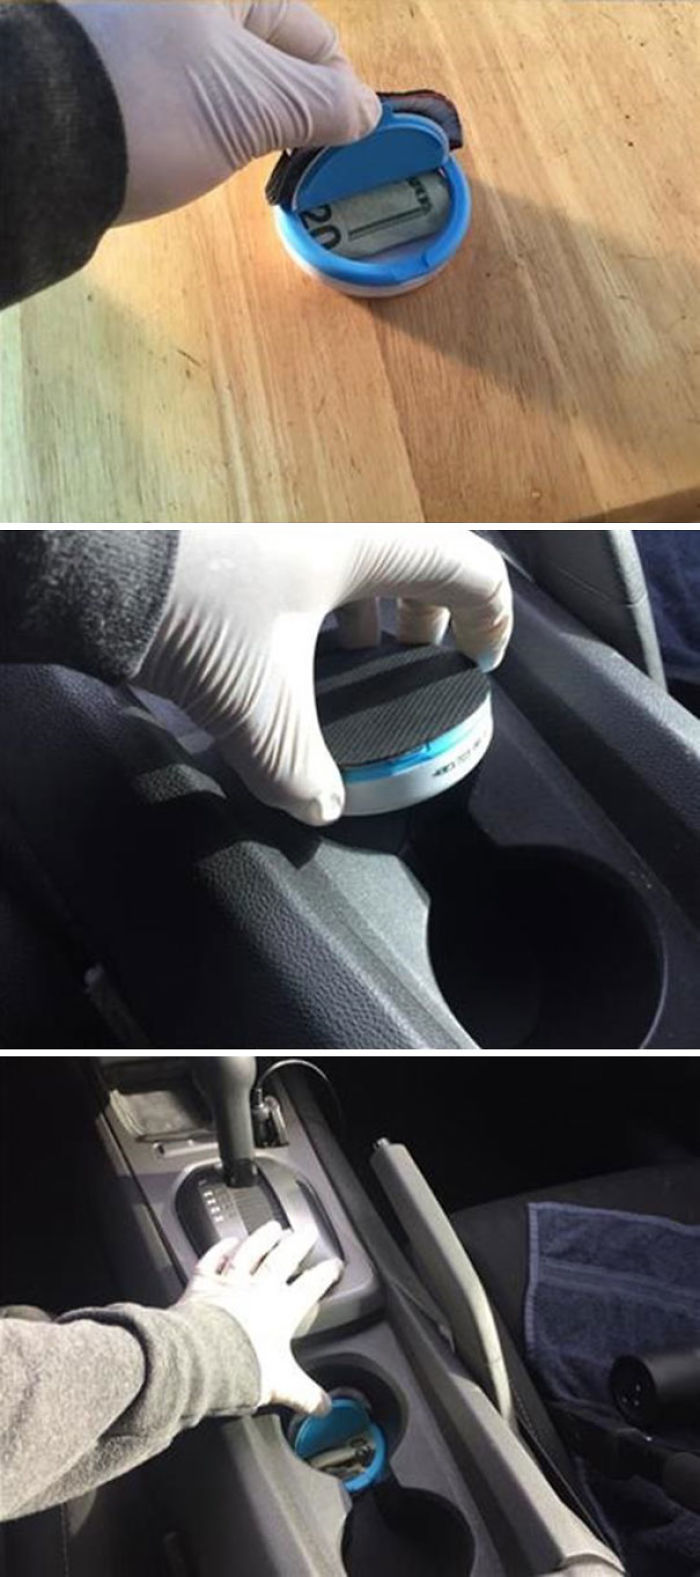 Para esconder cosas en el coche